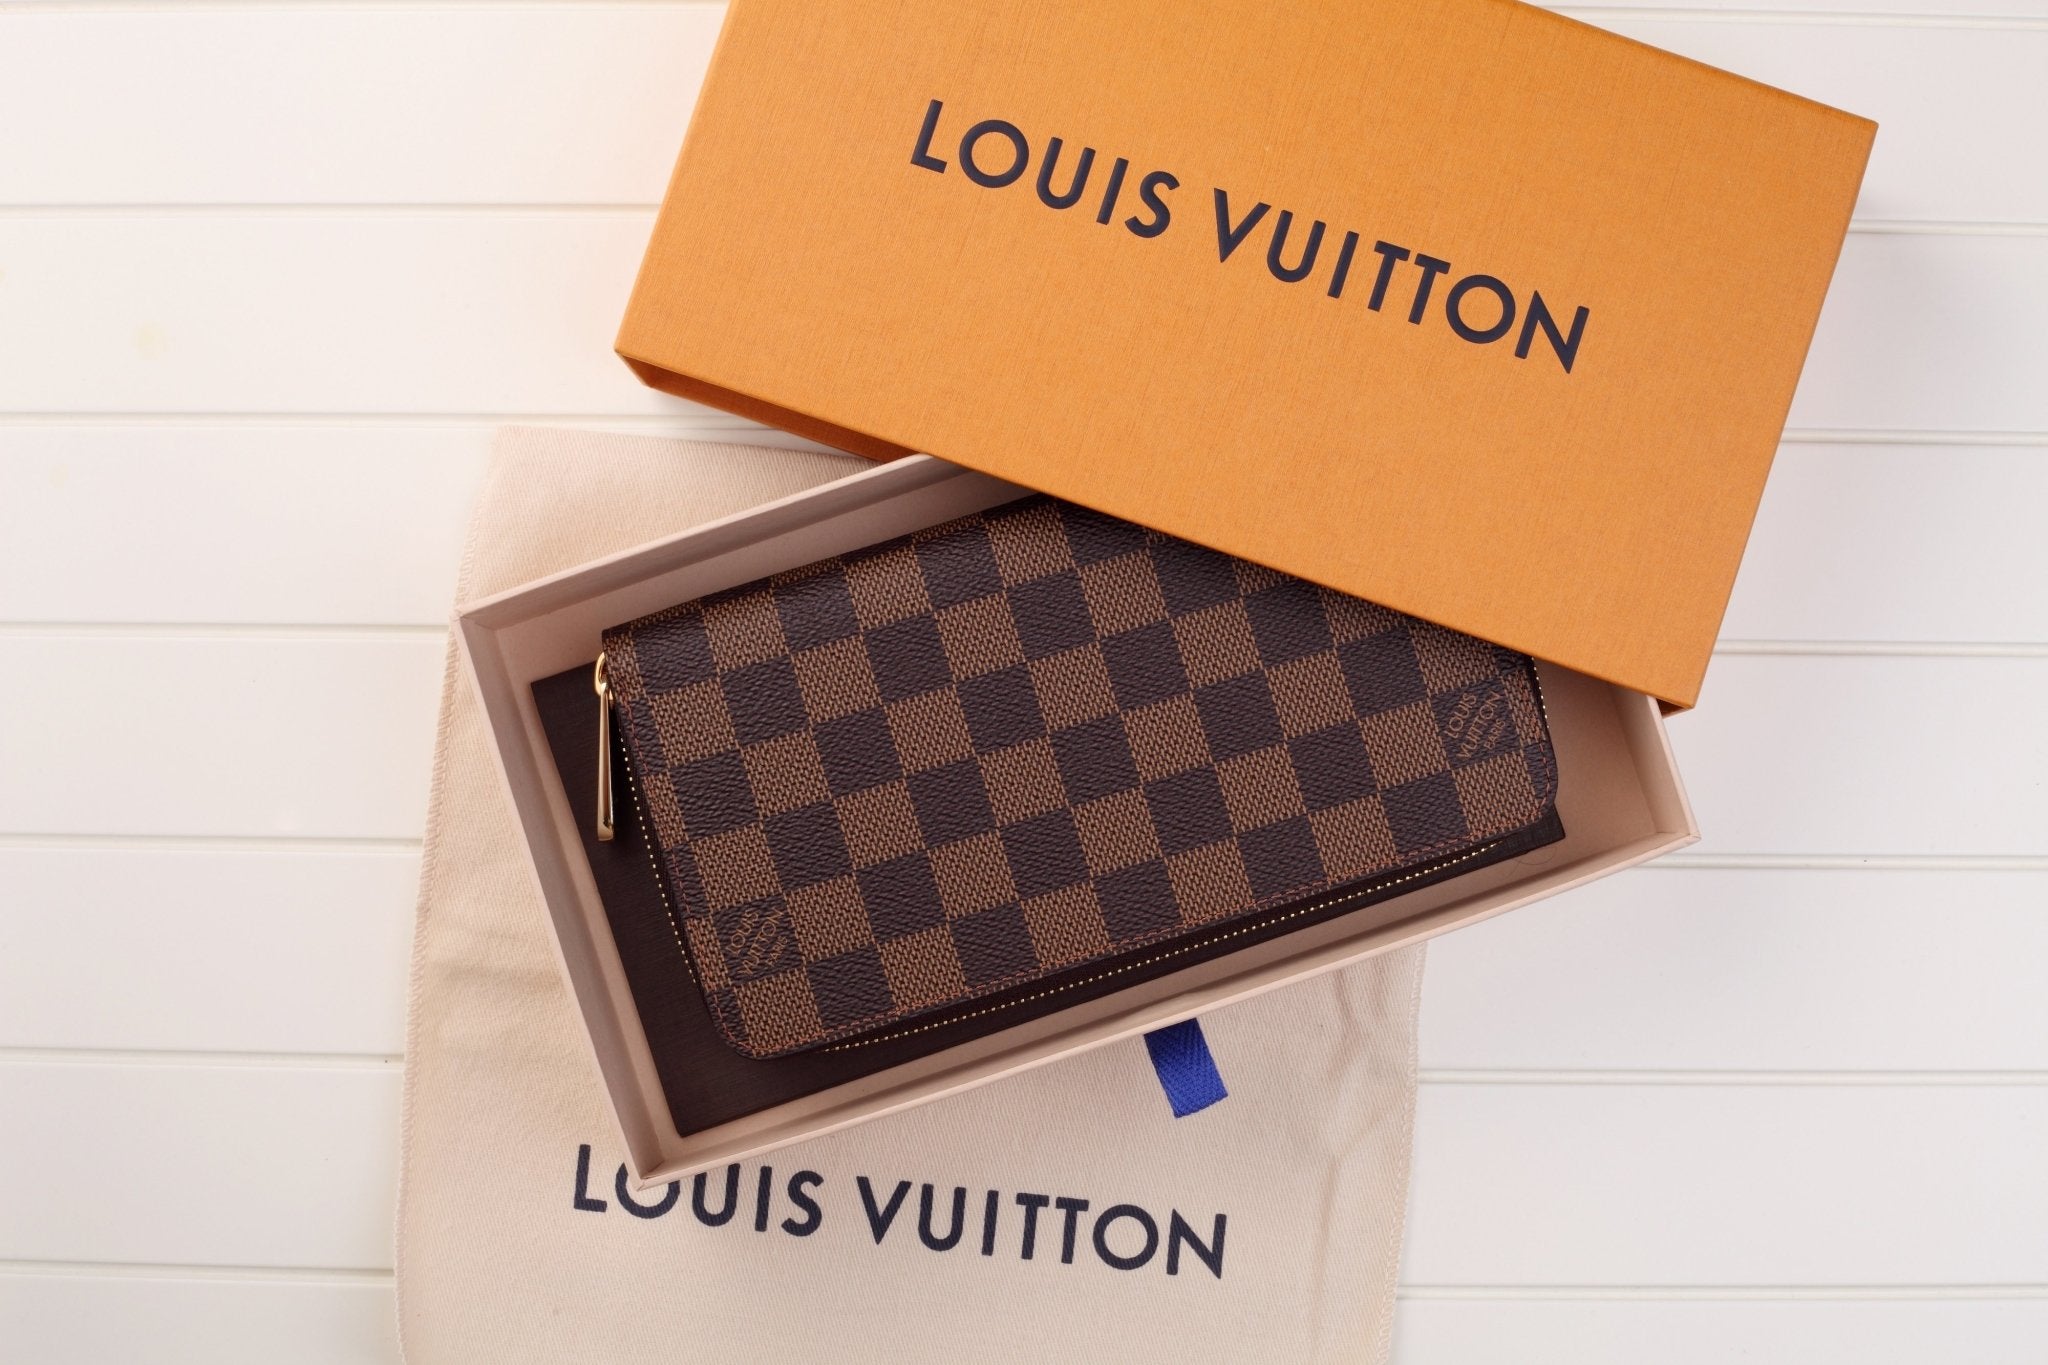 LOUIS VUITTON WALLETS – Luxury Cheaper